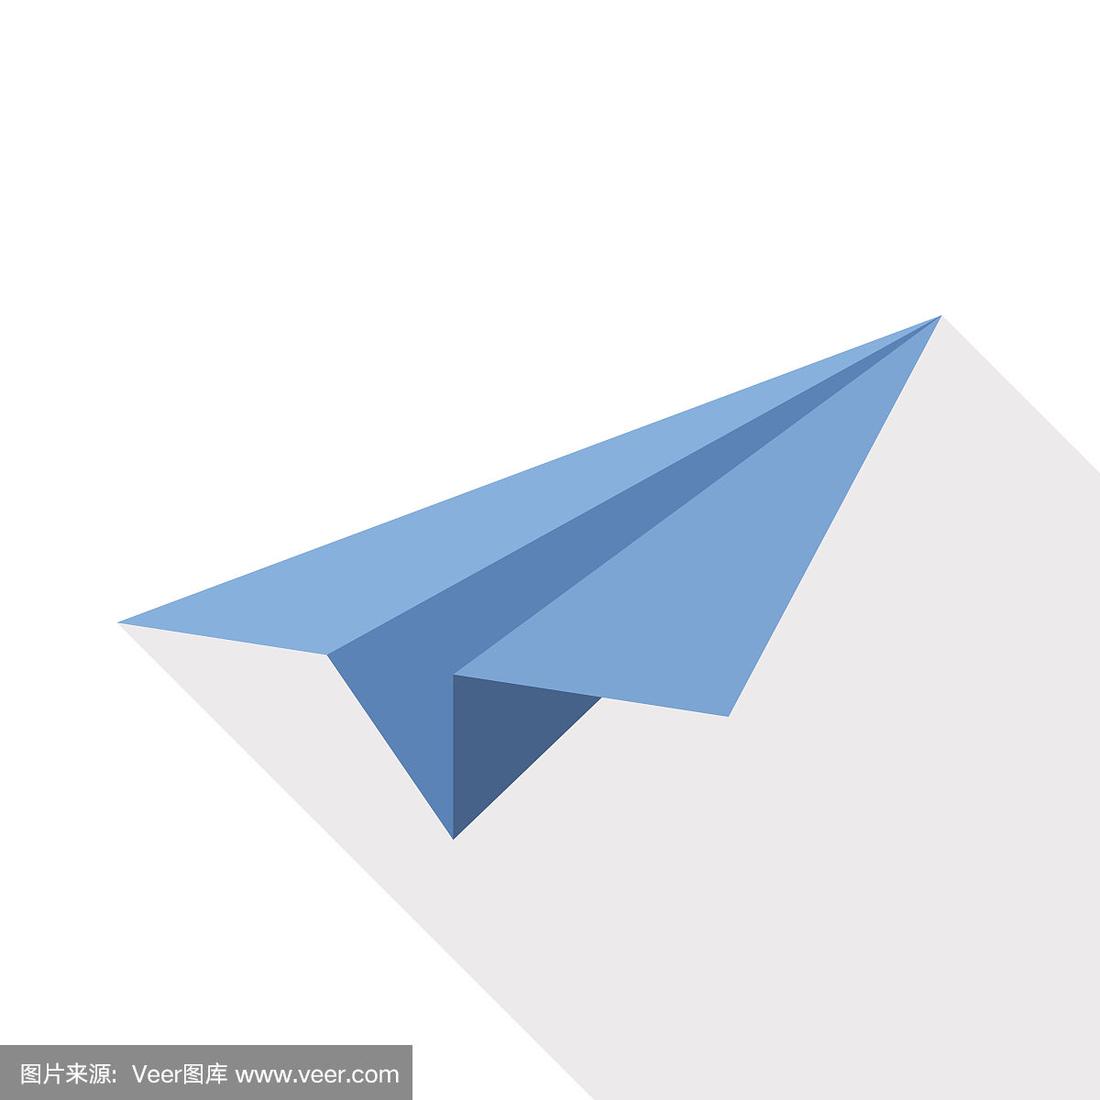 [纸飞机软件名字]纸飞机软件英文名